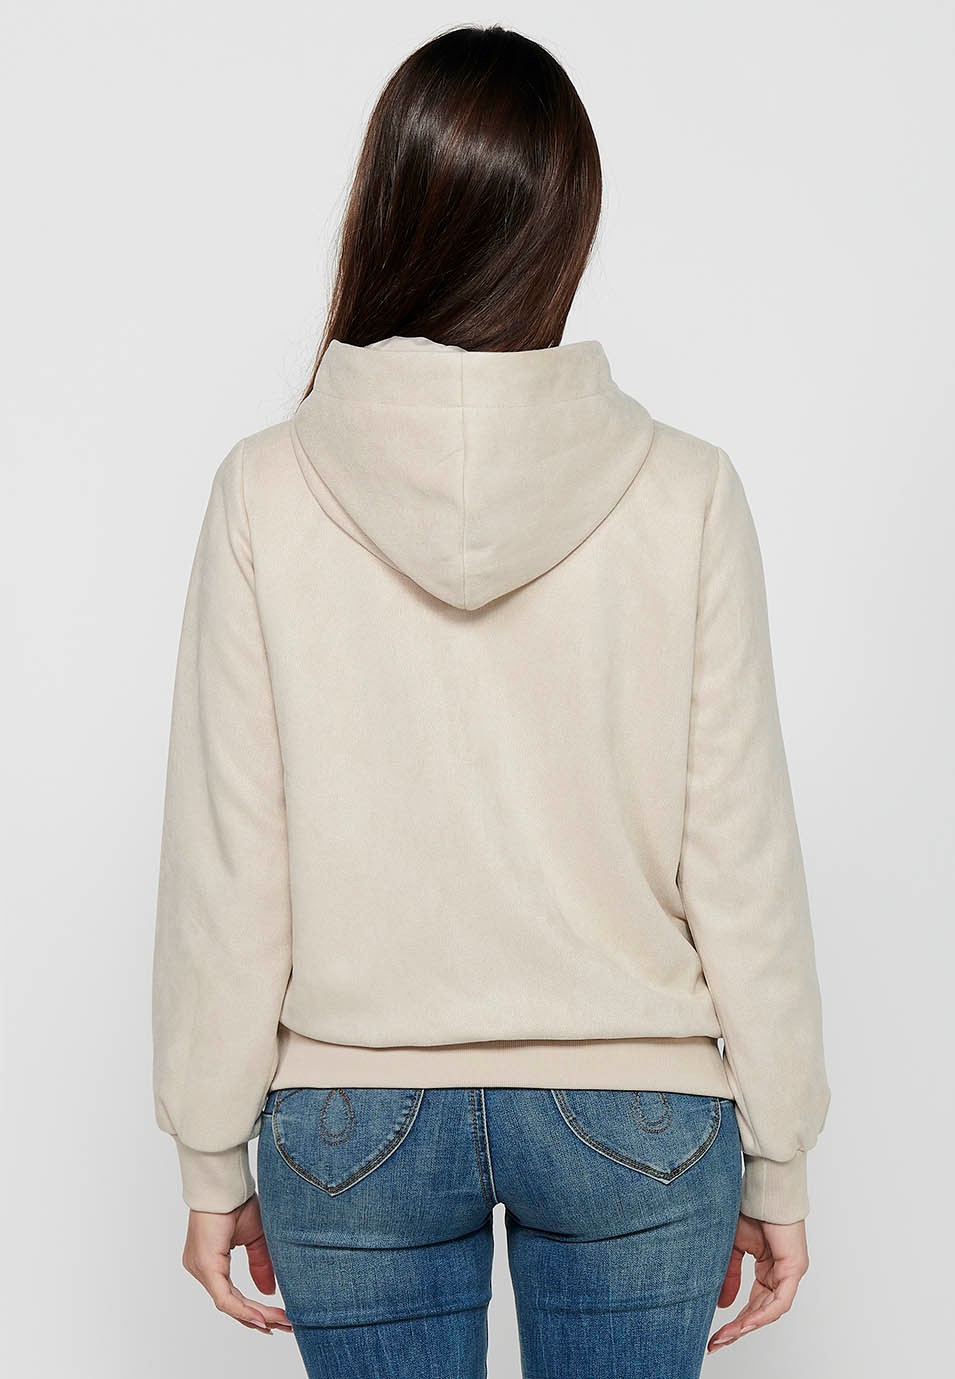 Women's Ecru Color Hooded Collar Long Sleeve Zip Front Closure Sweatshirt Jacket 3